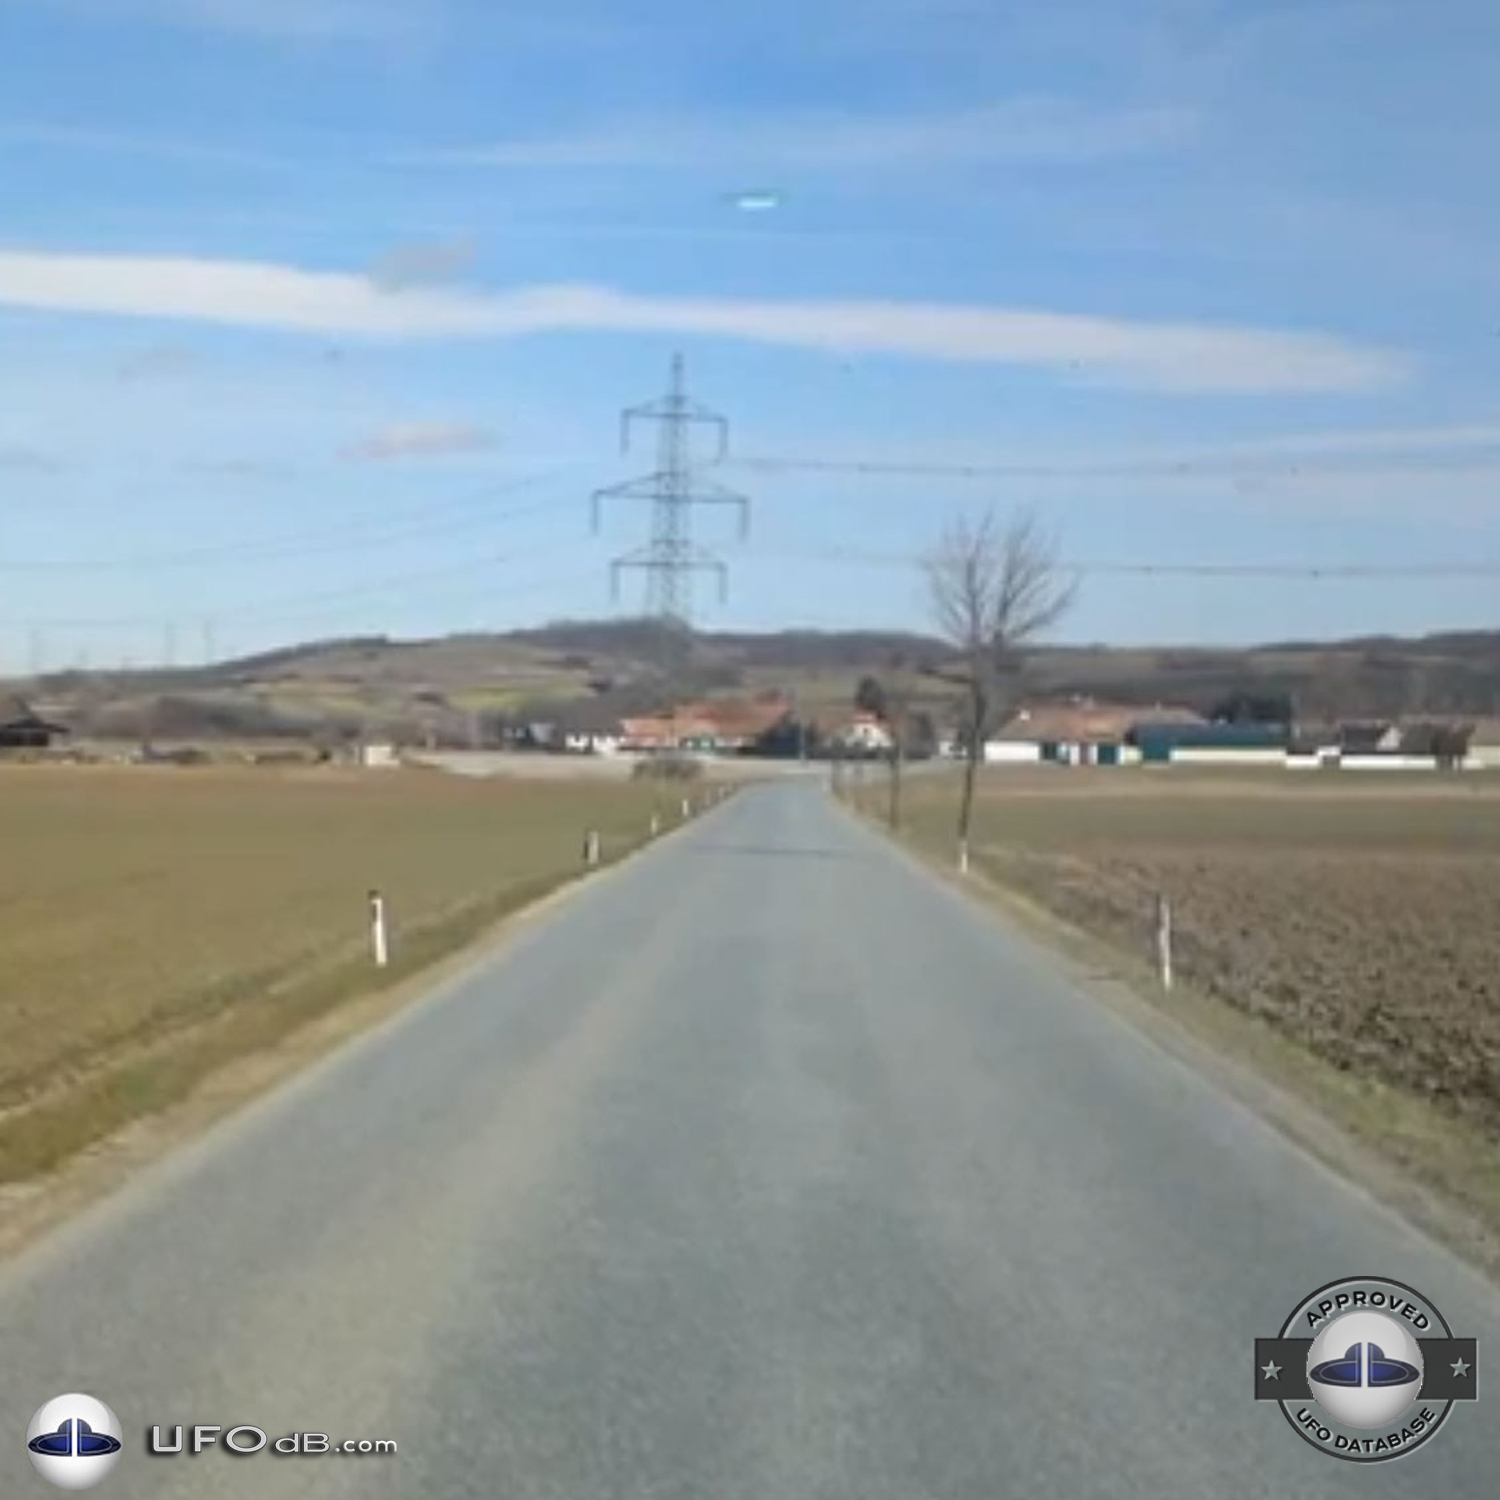 UFO picture taken near Sitzendorf an der Schmida in Austria - 2013 UFO Picture #547-1